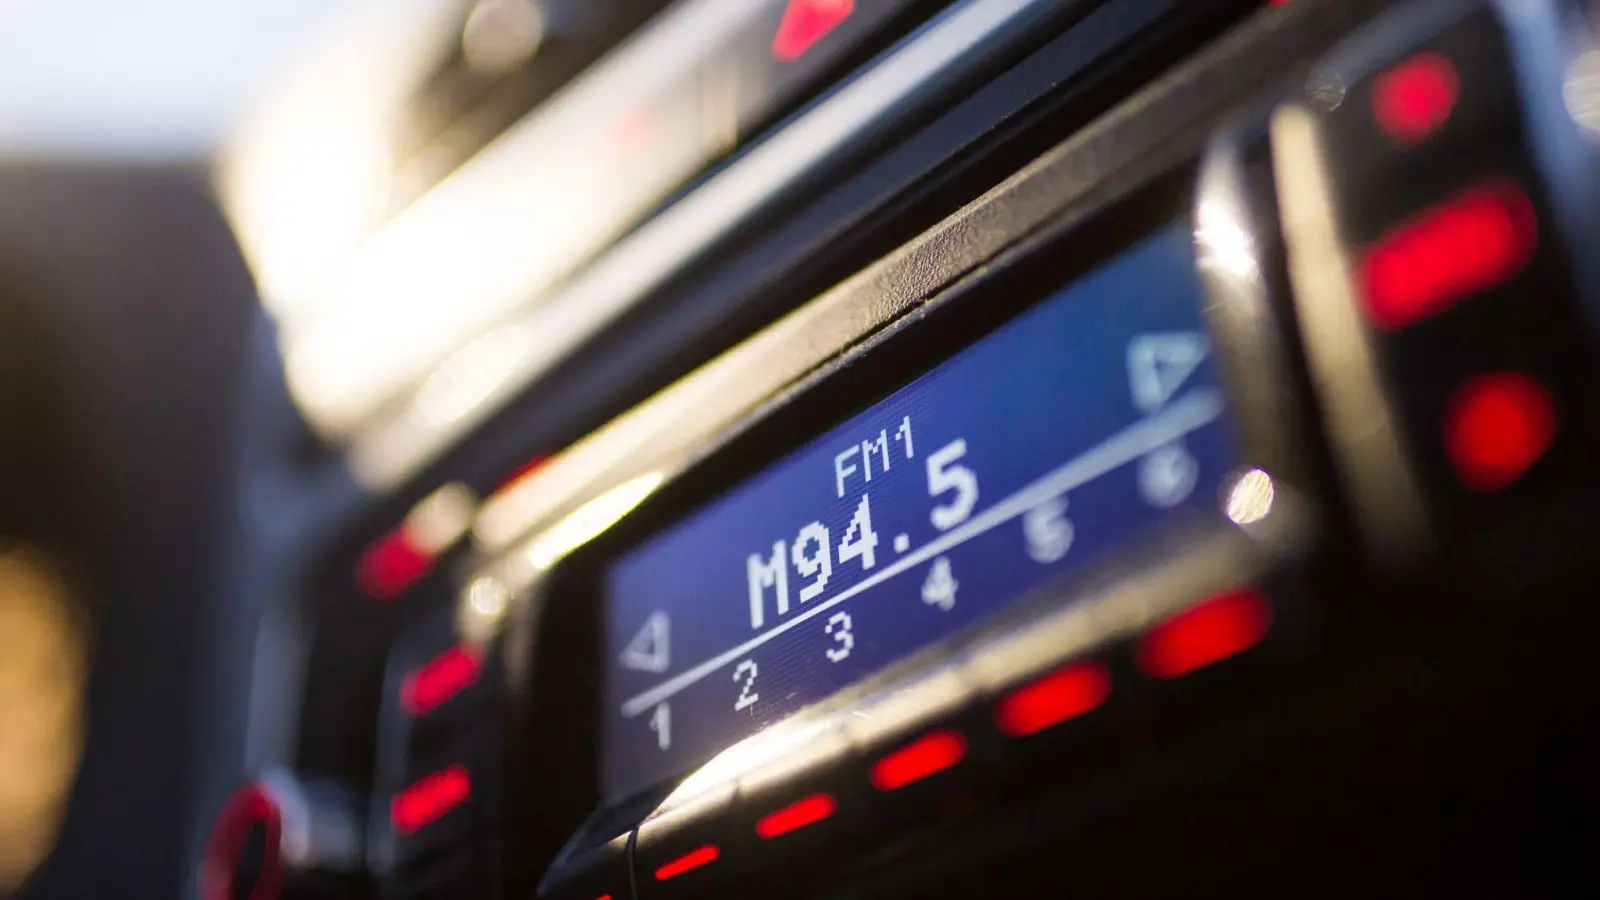 Auf einem Autoradio ist die Frequenz 94,50 MHz eingestellt. (Foto: picture alliance/Alexander Heinl/dpa/Symbolbild)